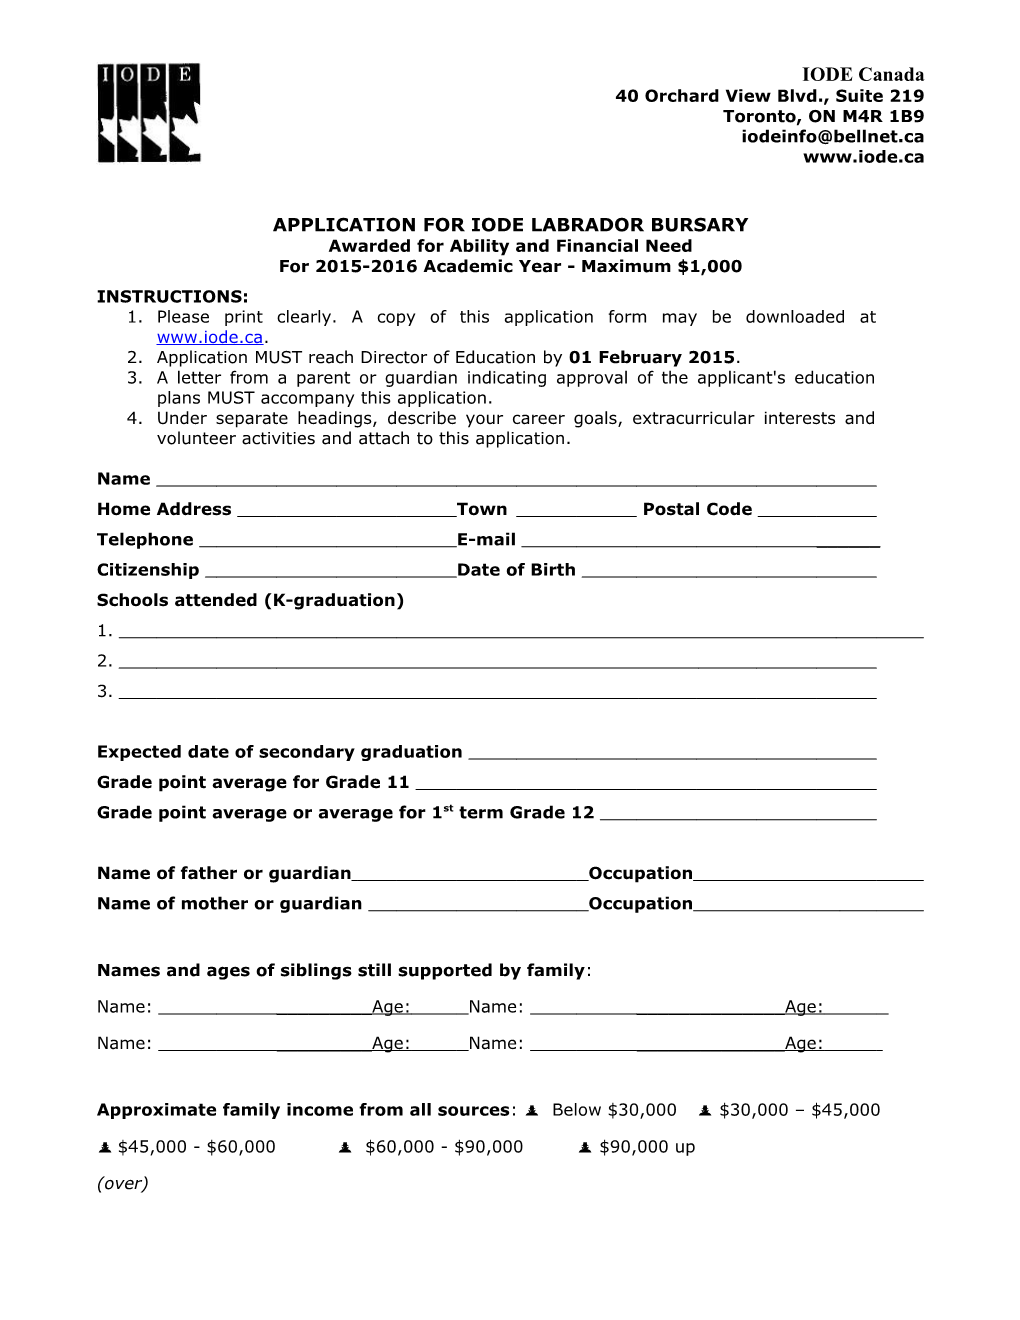 Application for Iode Labrador Bursary